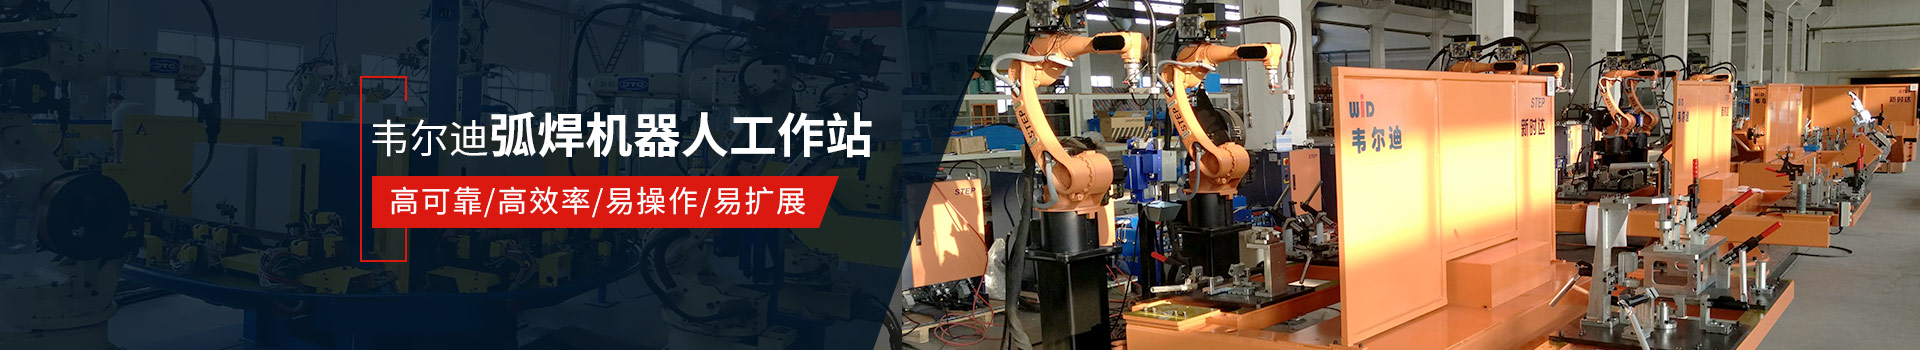 永利总站弧焊机器人工作站易操作、高效率